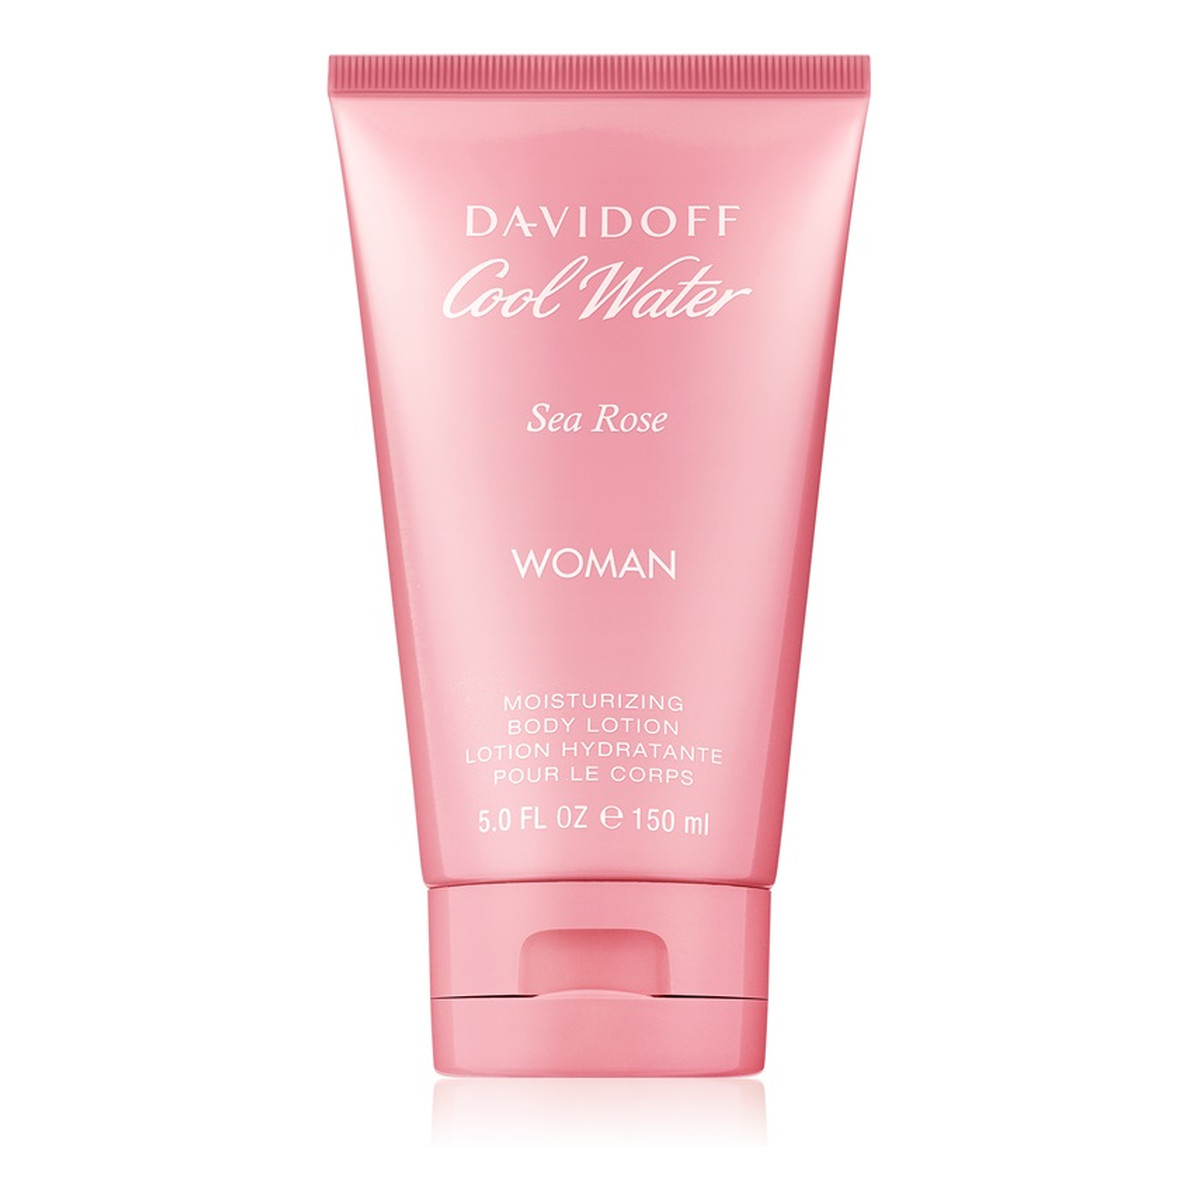 Davidoff Cool Water Woman Sea Rose mleczko do ciała dla kobiet 150ml